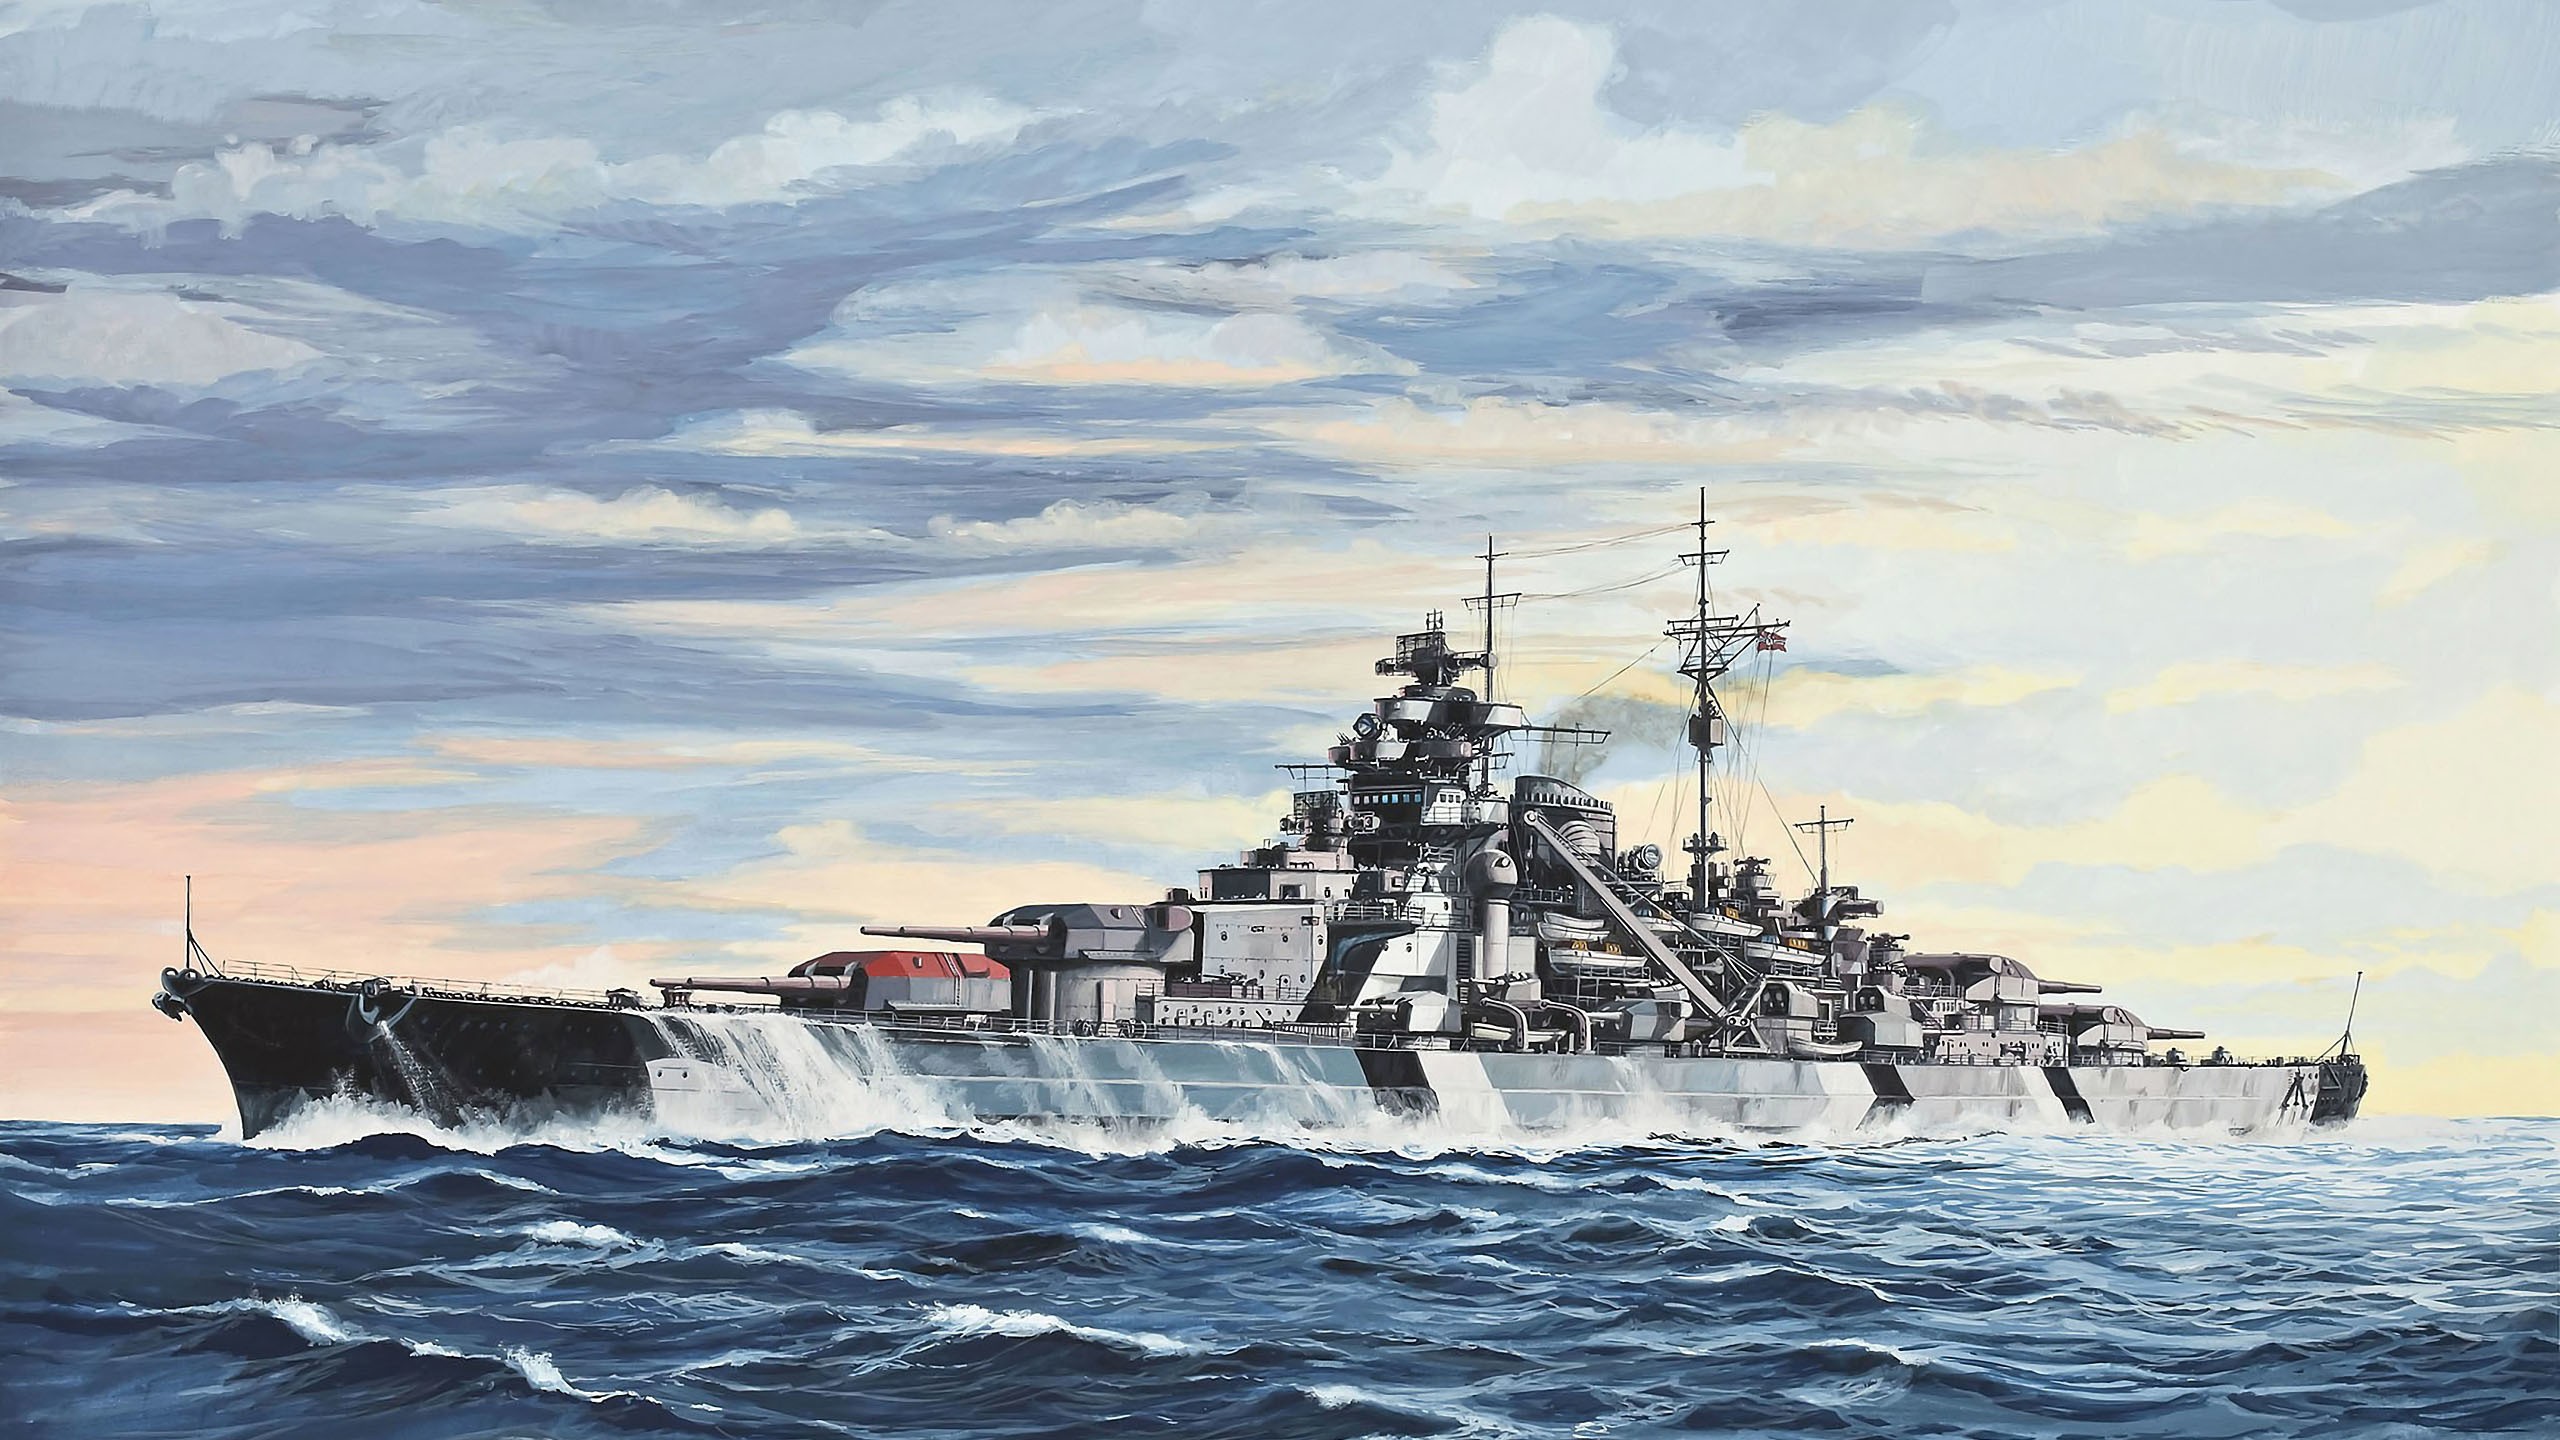 General 2560x1440 Battleships Bismarck (ship) warship painting ship artwork military vehicle military vehicle